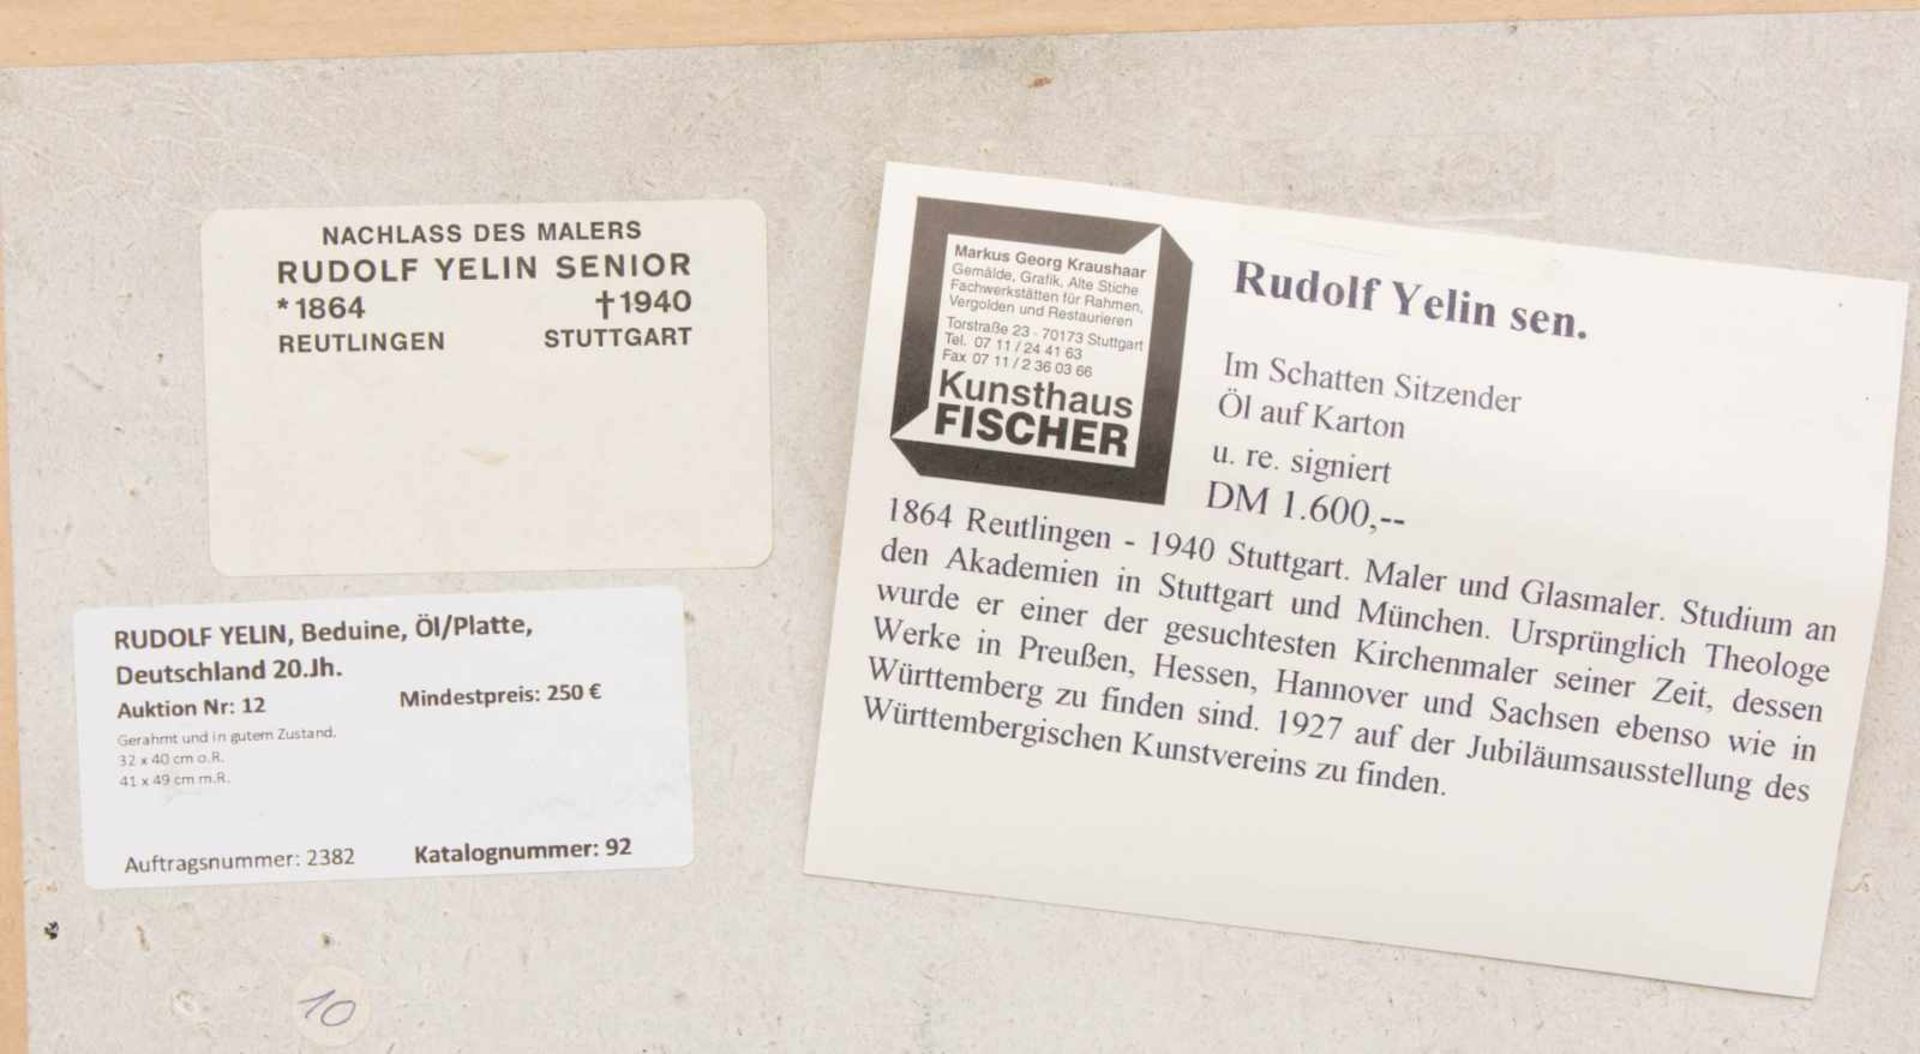 RUDOLF YELIN, Beduine, Öl/Platte, Deutschland 20.Jh.Gerahmt und in gutem Zustand.32 x 40 cm o.R.41 x - Bild 4 aus 4